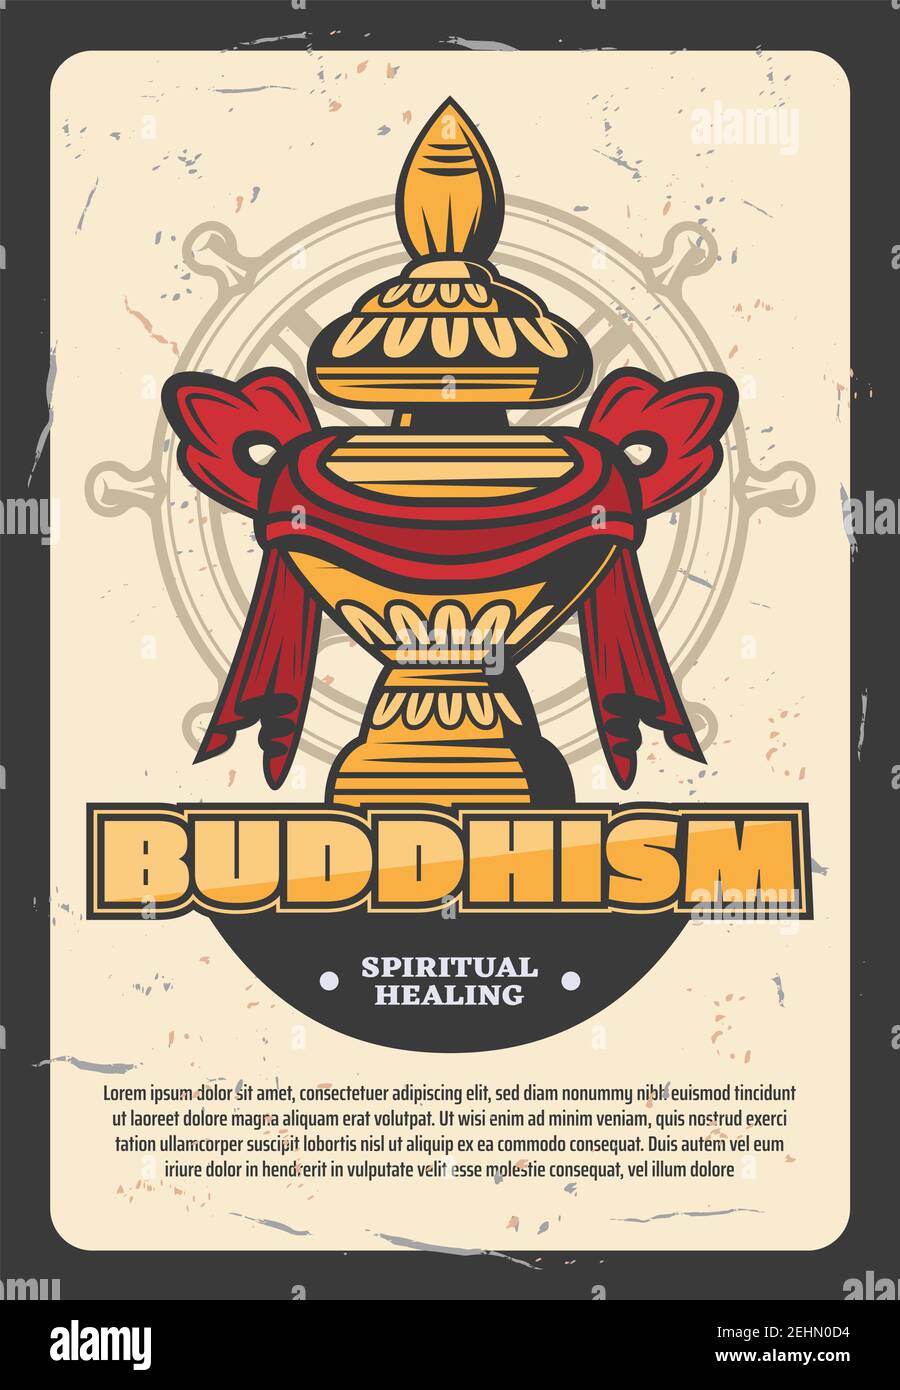 Orientalische Religion Buddhismus Vektor-Poster. Goldmönche Gefäß für Nahrung in Band eingewickelt. Religiöse heilige Attribut von Indien und China auf Navigation whee Stock Vektor